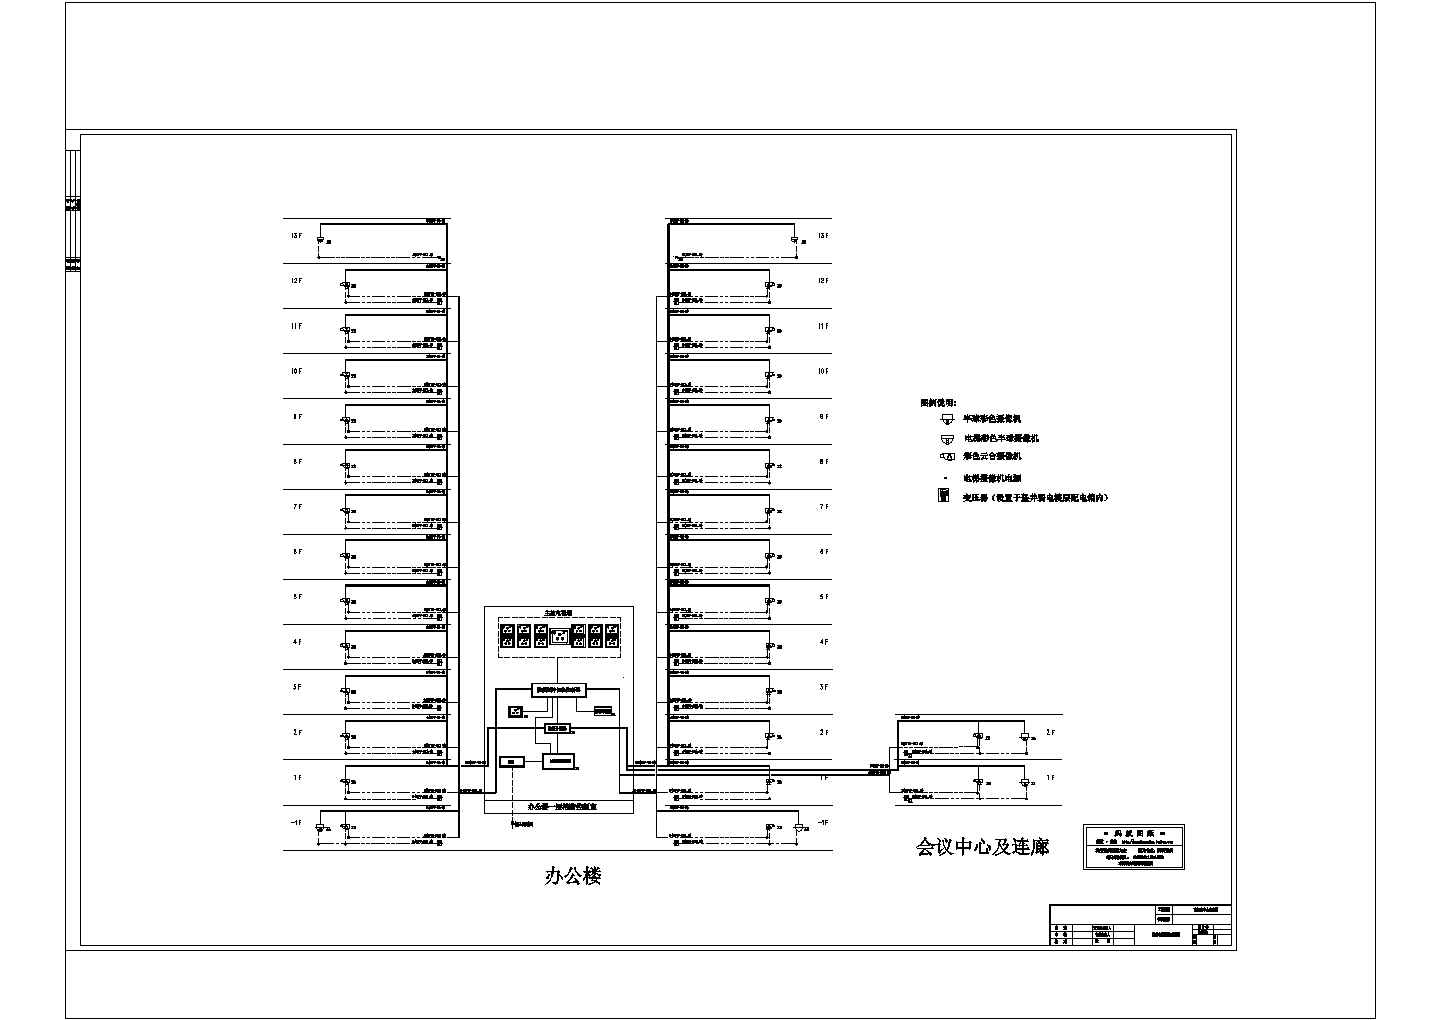 综合性13层办公楼安防监控系统设计图